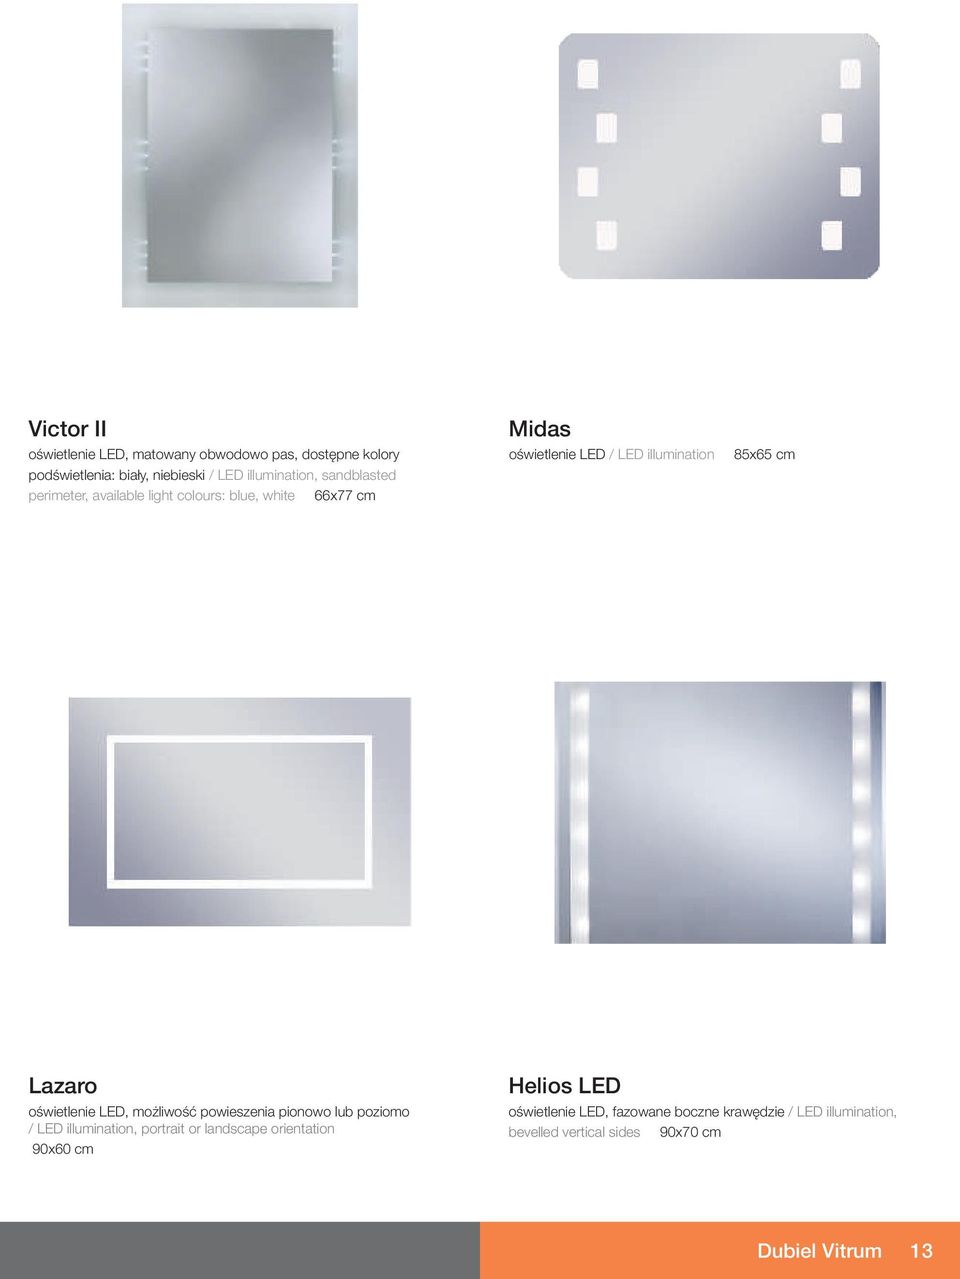 Lazaro oœwietlenie LED, mo liwoœæ powieszenia pionowo lub poziomo / LED illumination, portrait or landscape orientation